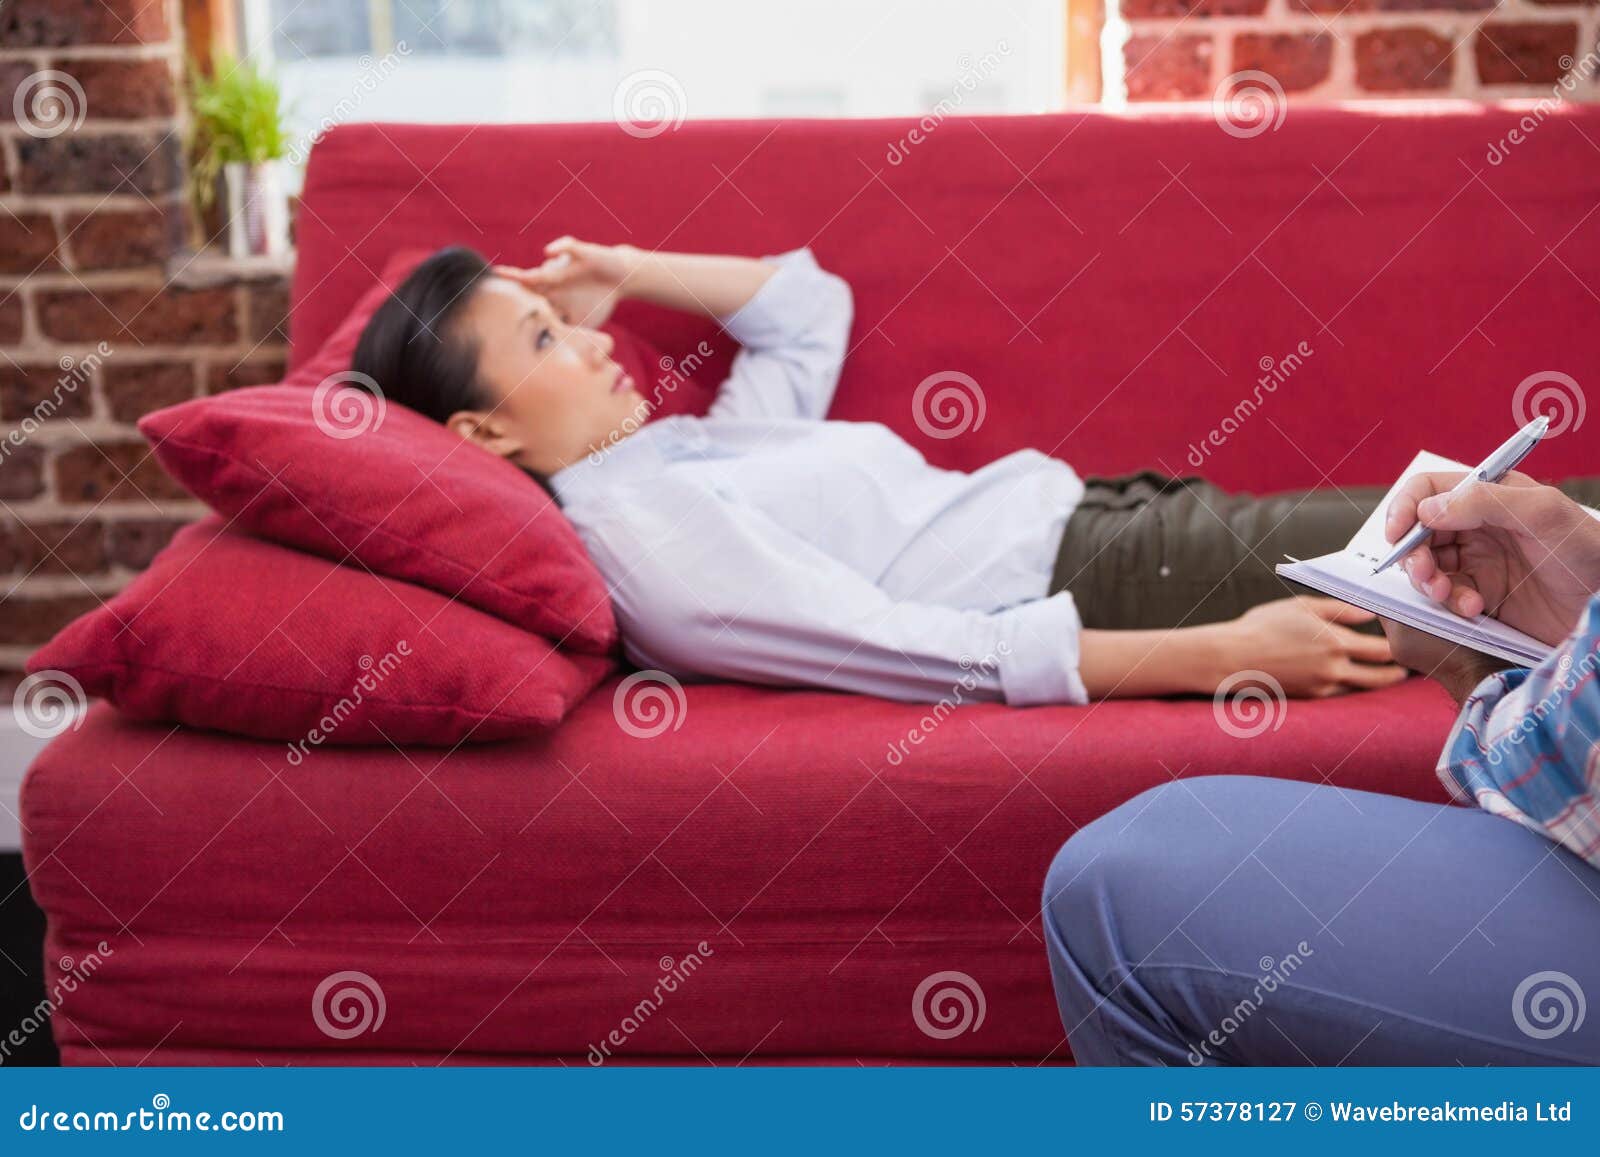 Лежал или лижал. Подросток лежит на диване. Фотосессия депрессия. Пресс лежа на диване. Софа спать.